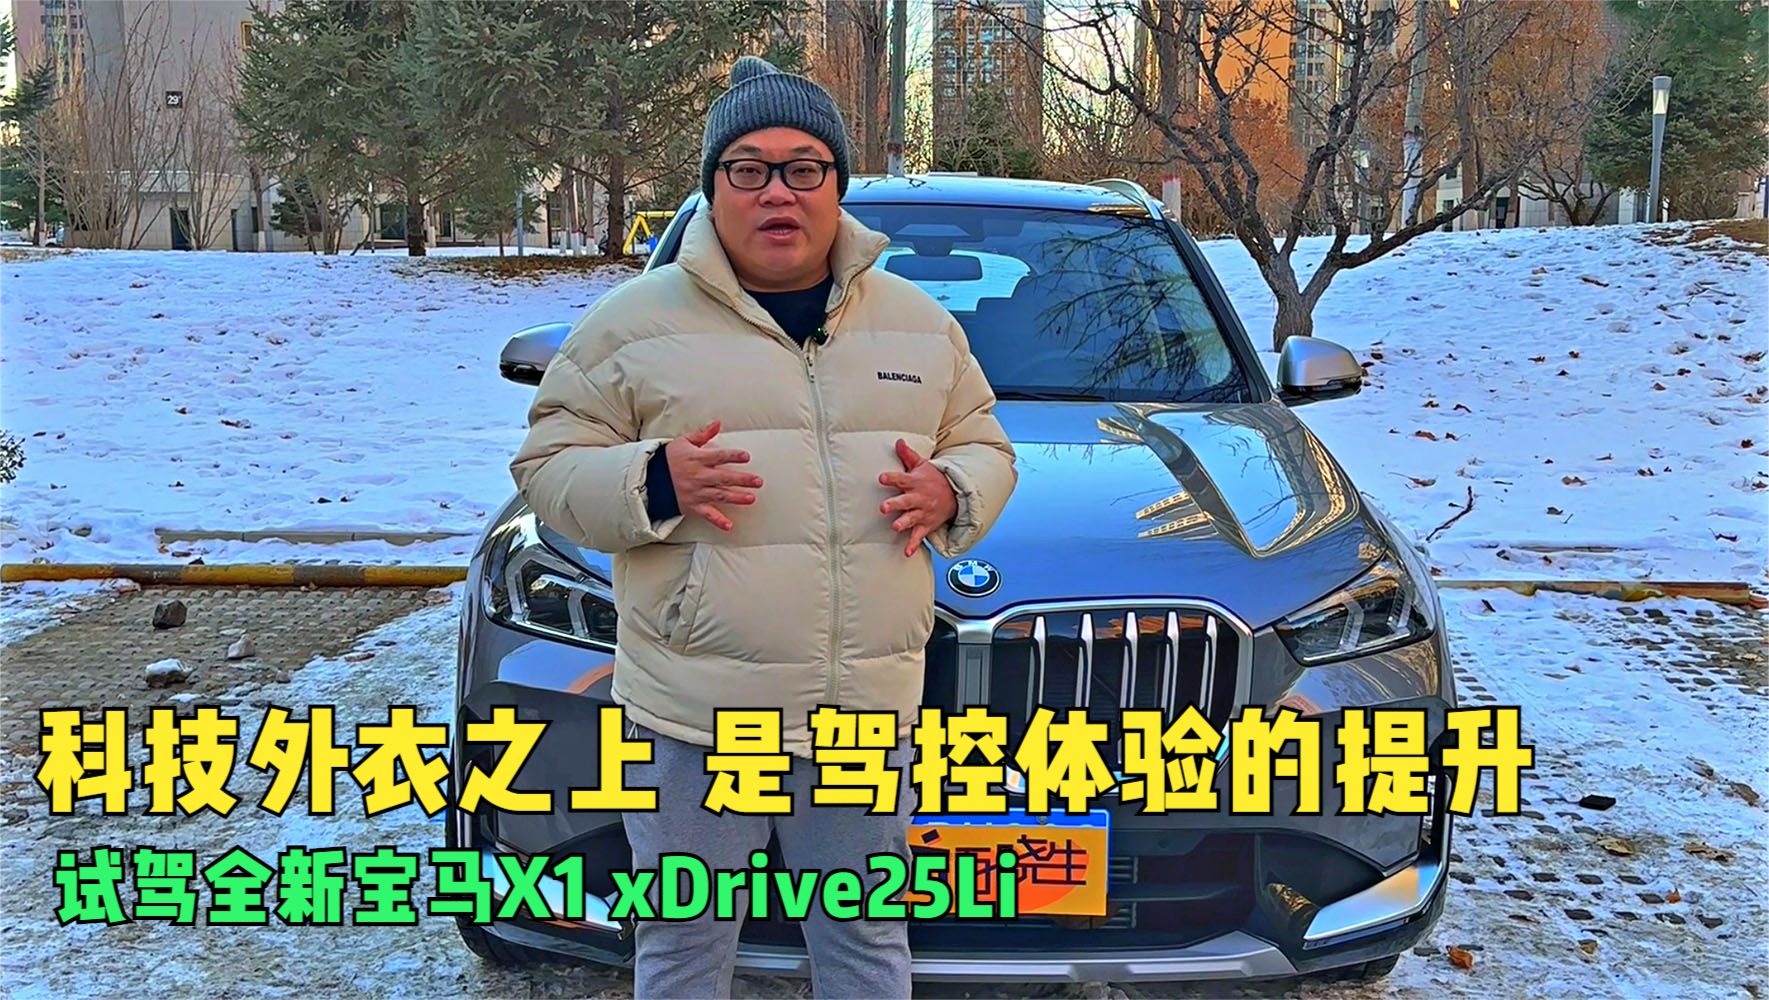 科技外衣之上 是驾控体验的提升 试驾全新宝马X1 xDrive25Li视频